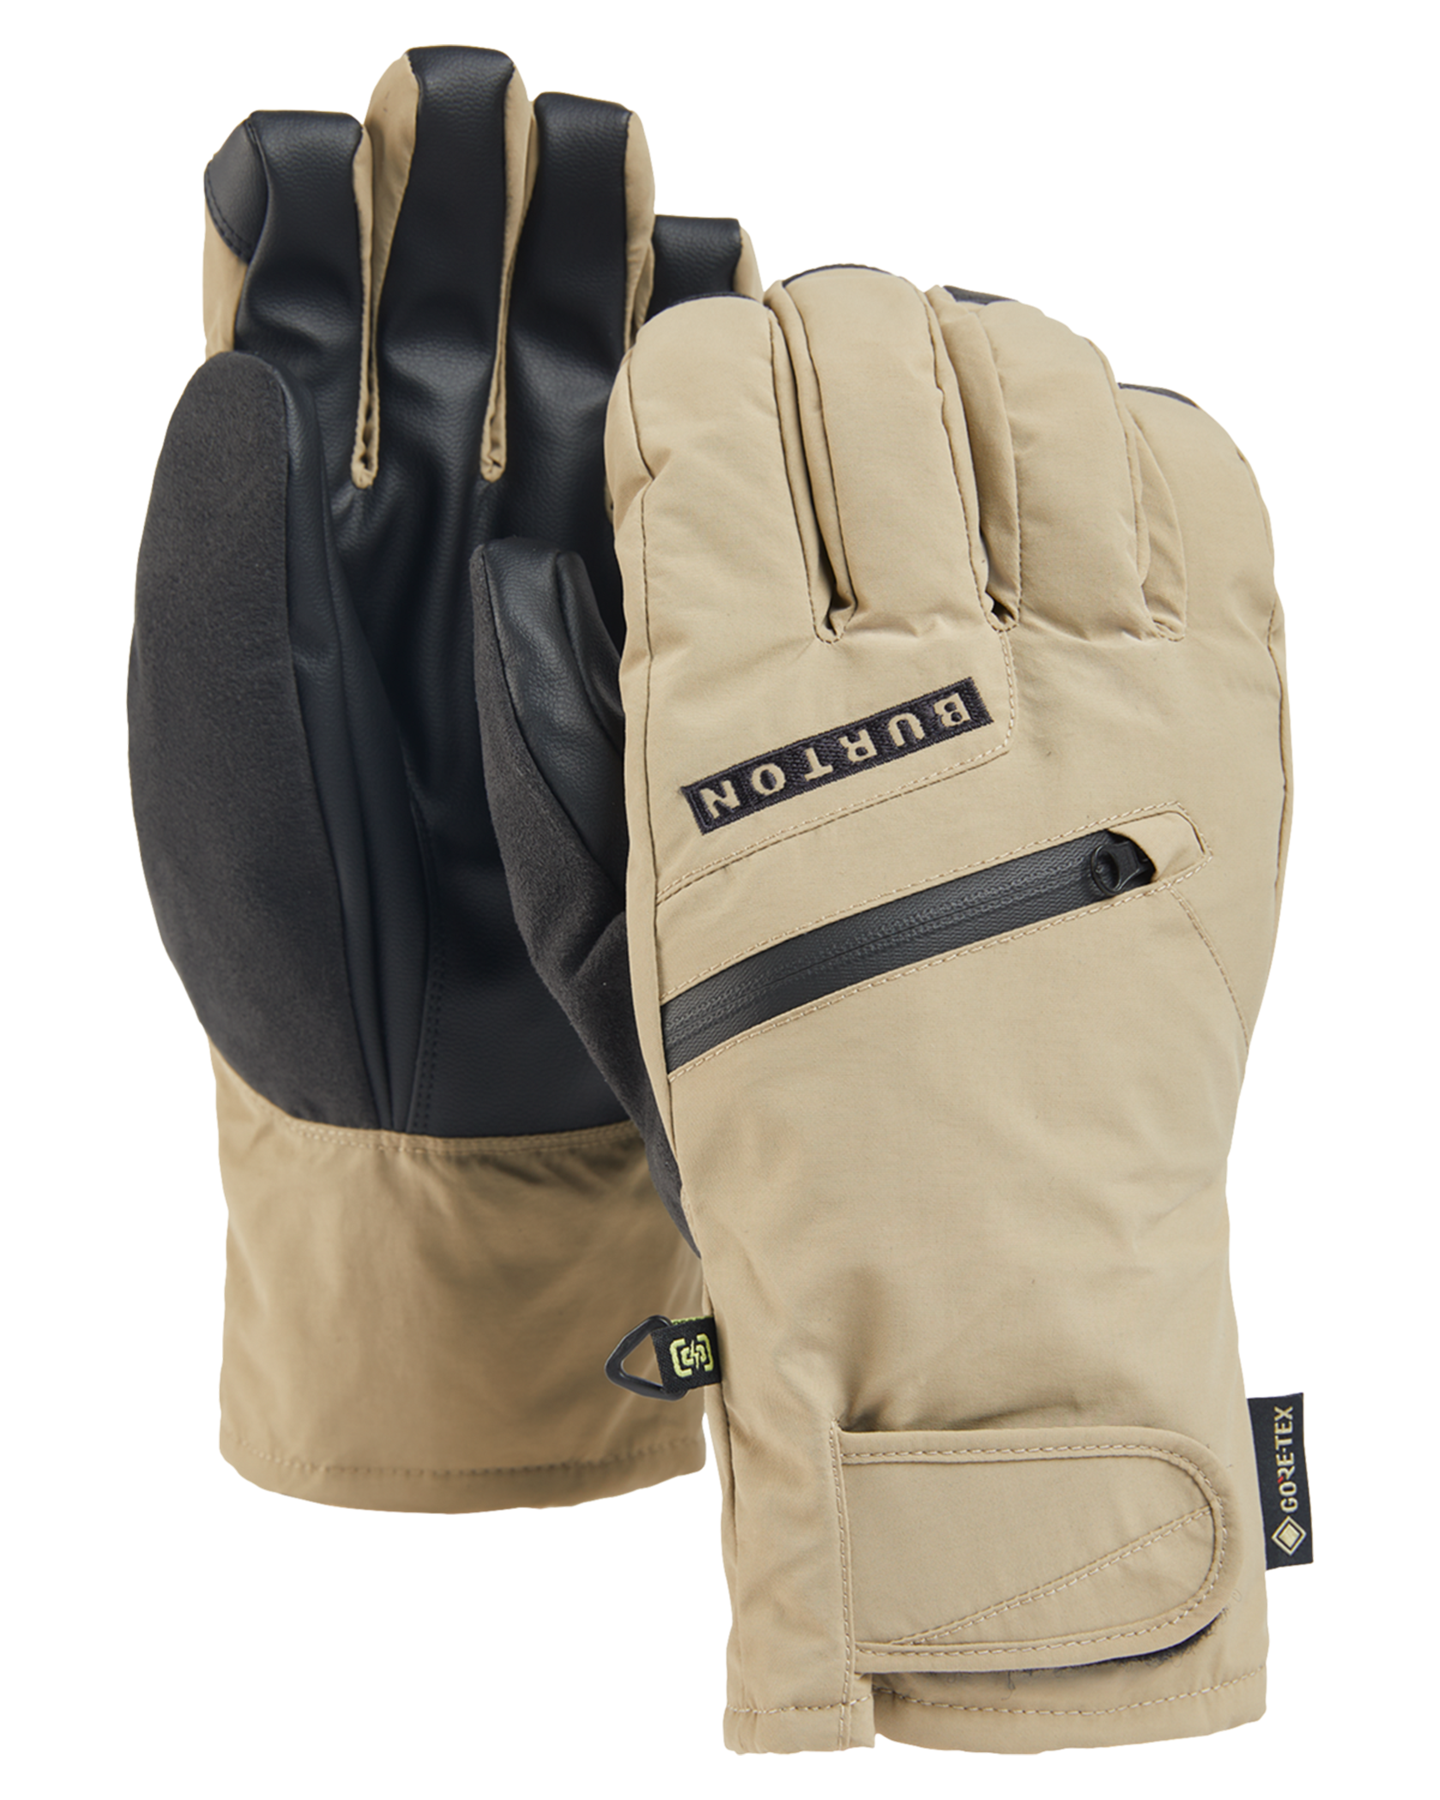 Burton Men's Gore-Tex Under Snow Gloves - Kelp Men's Snow Gloves & Mittens - Trojan Wake Ski Snow